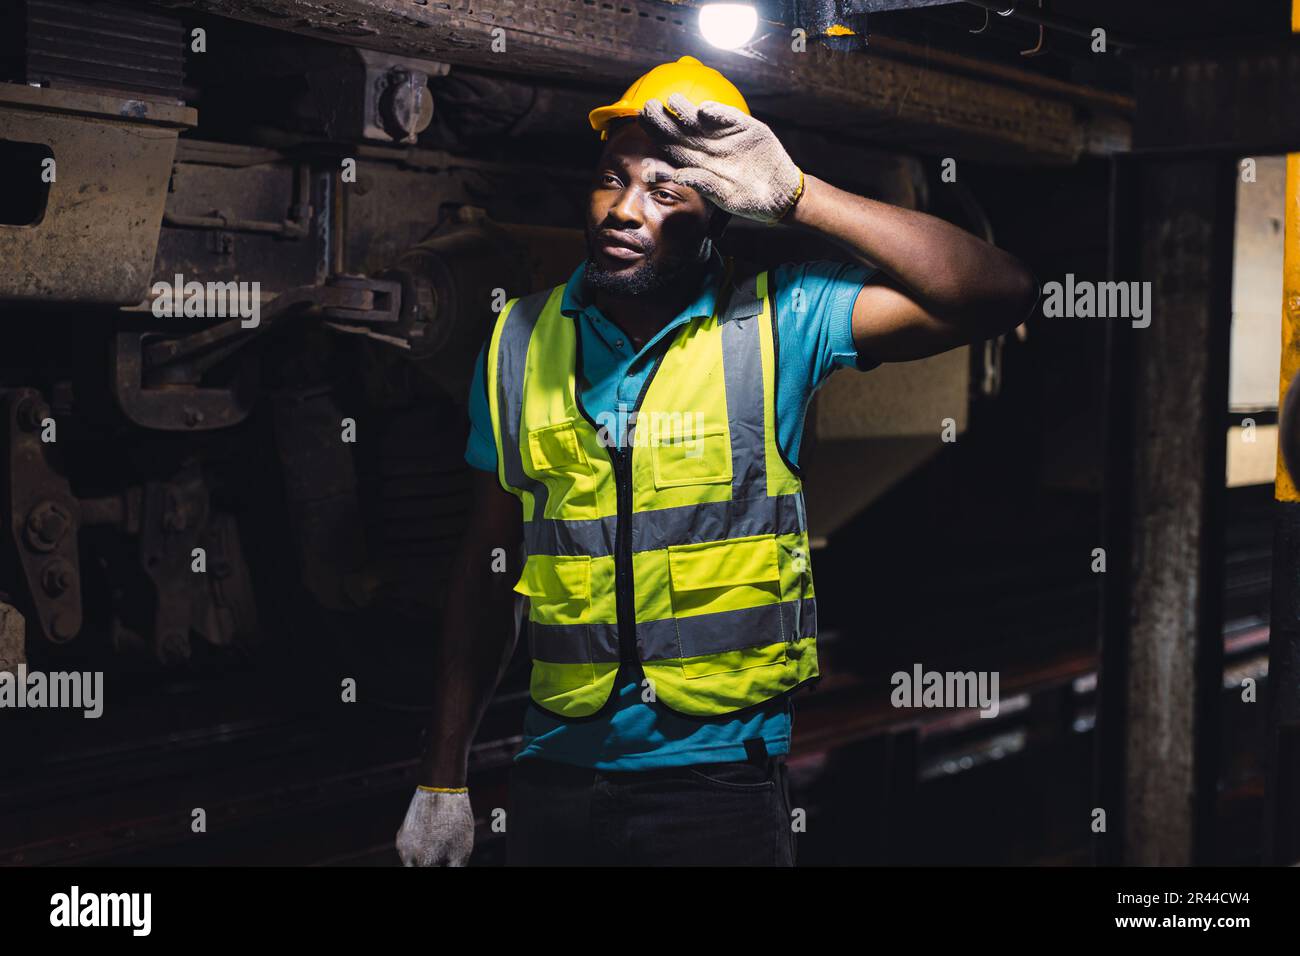 Travailleur fatigué épuisé travail dur, mécanicien d'ingénieur de locomotive sentir la fatigue travail dans la station de réparation de train machine de travail sale chaud Banque D'Images